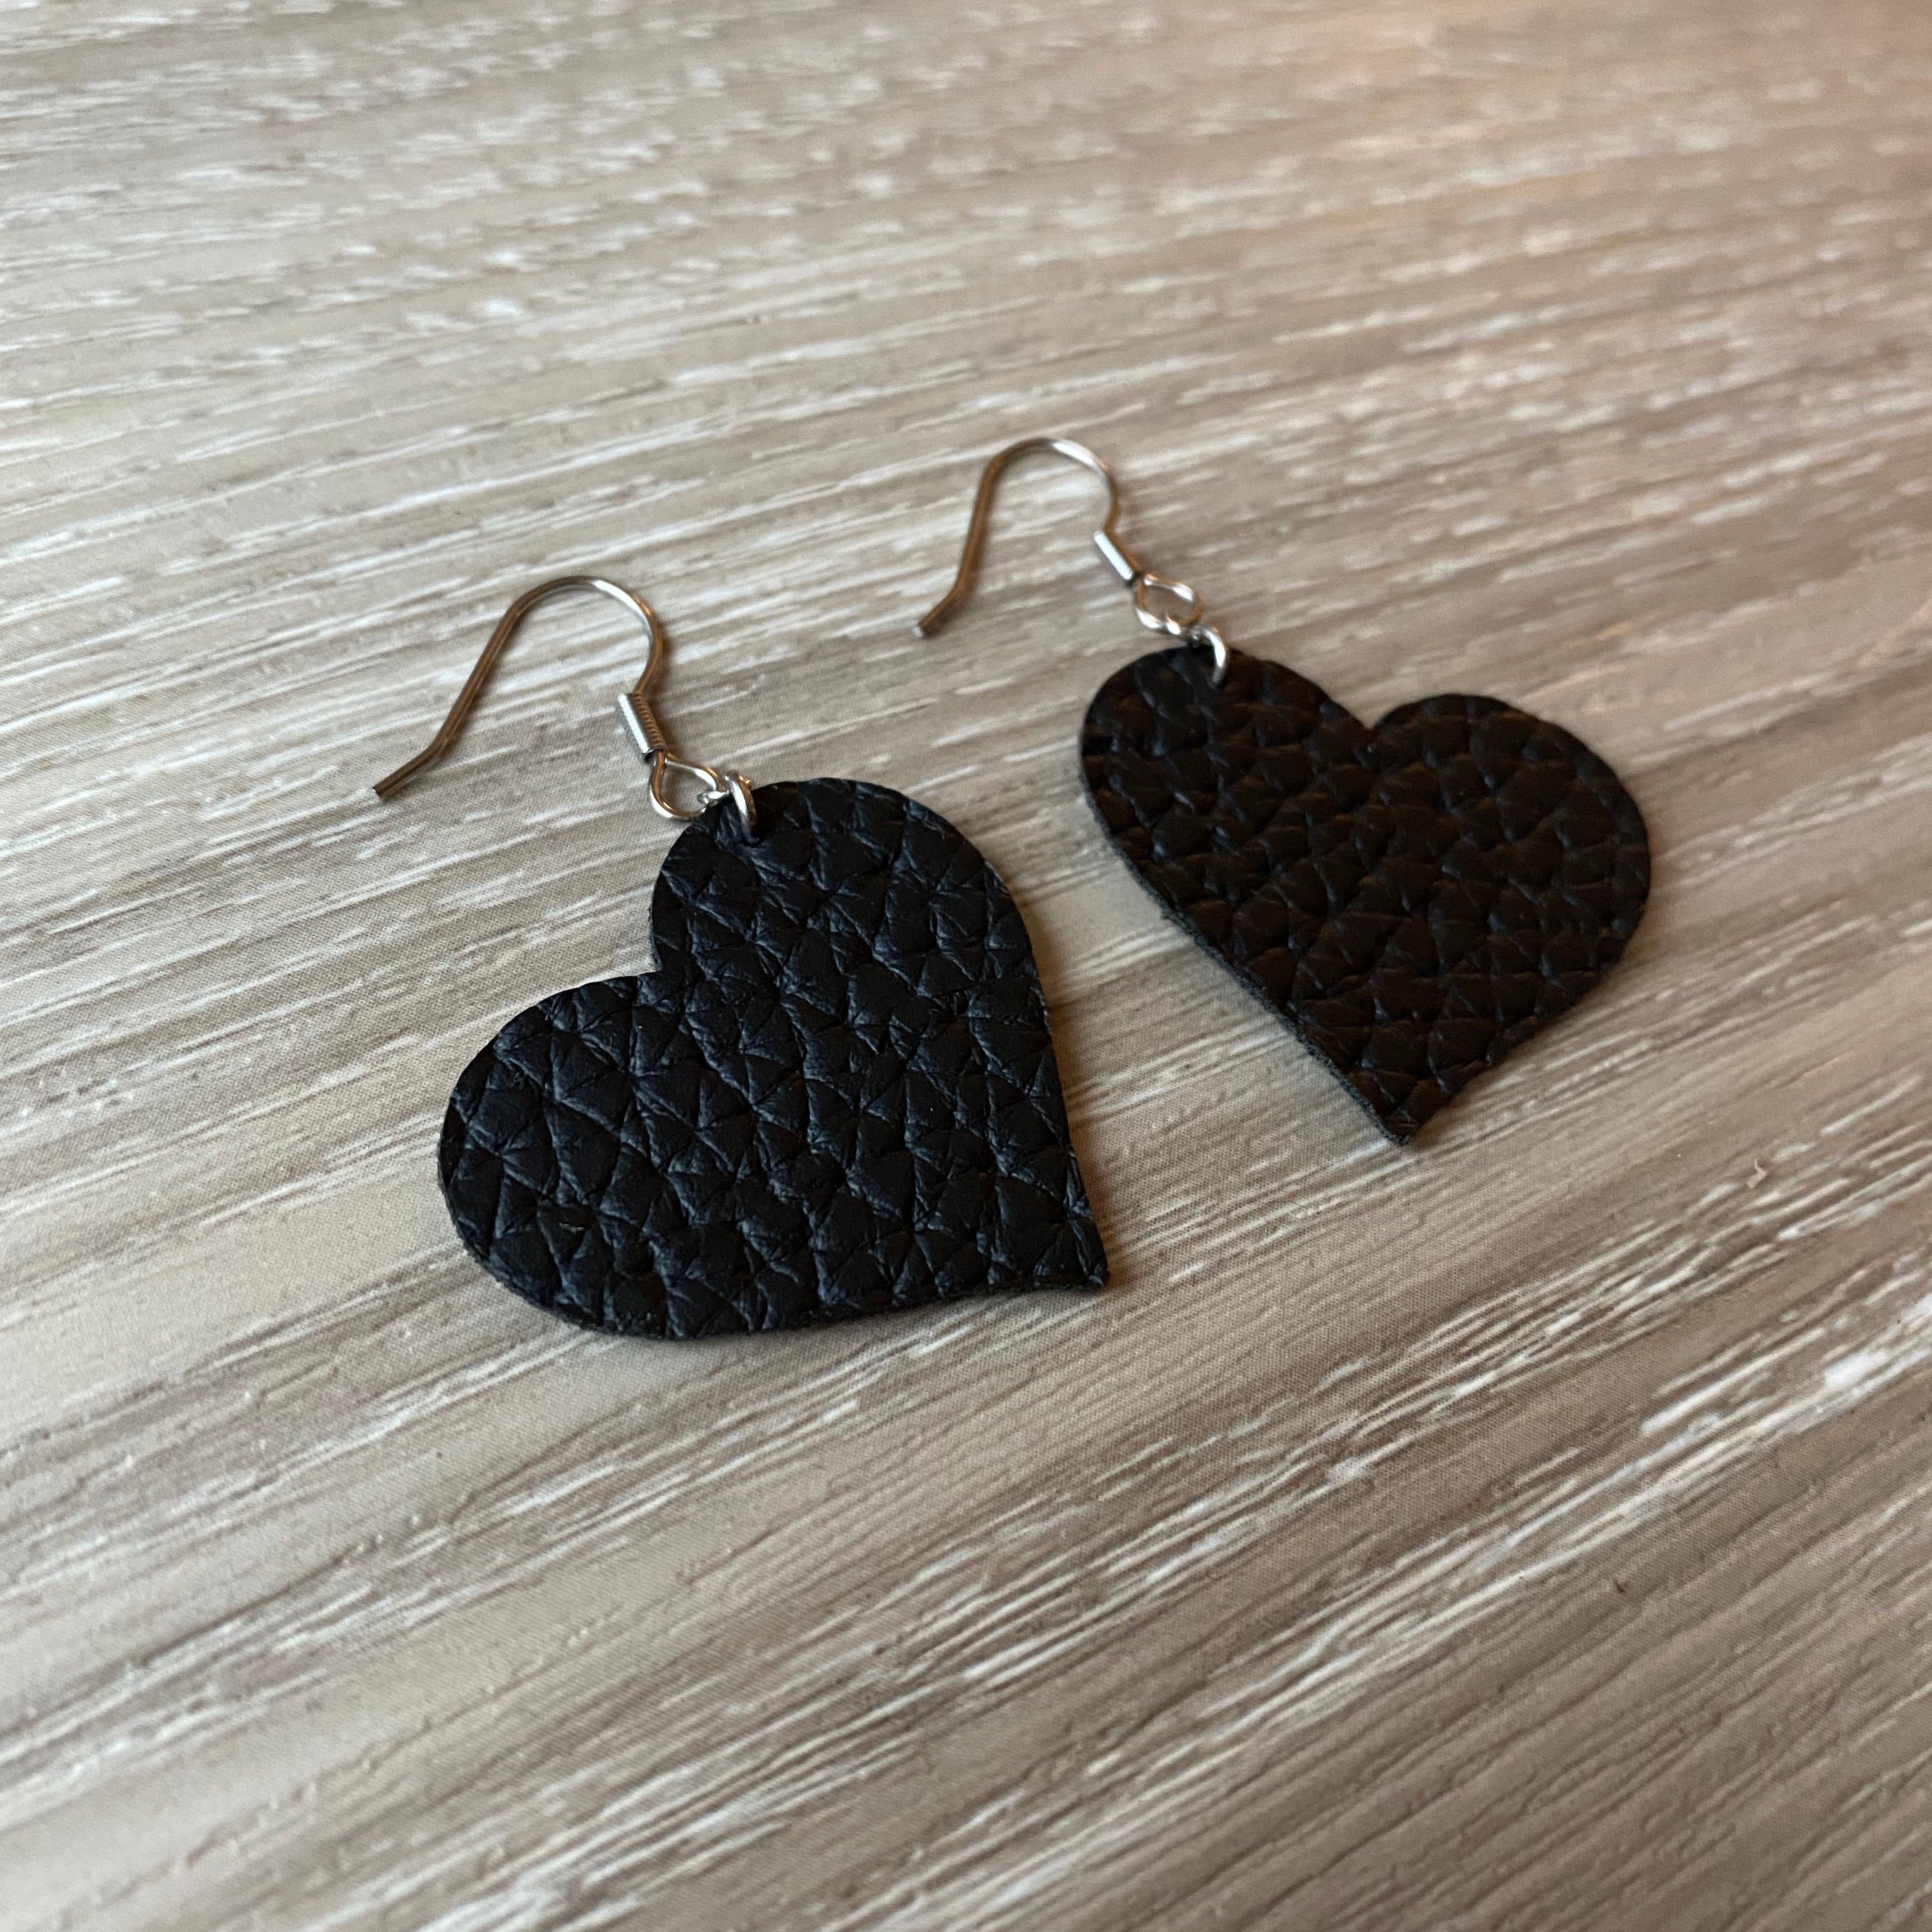 Heart Earrings - Black